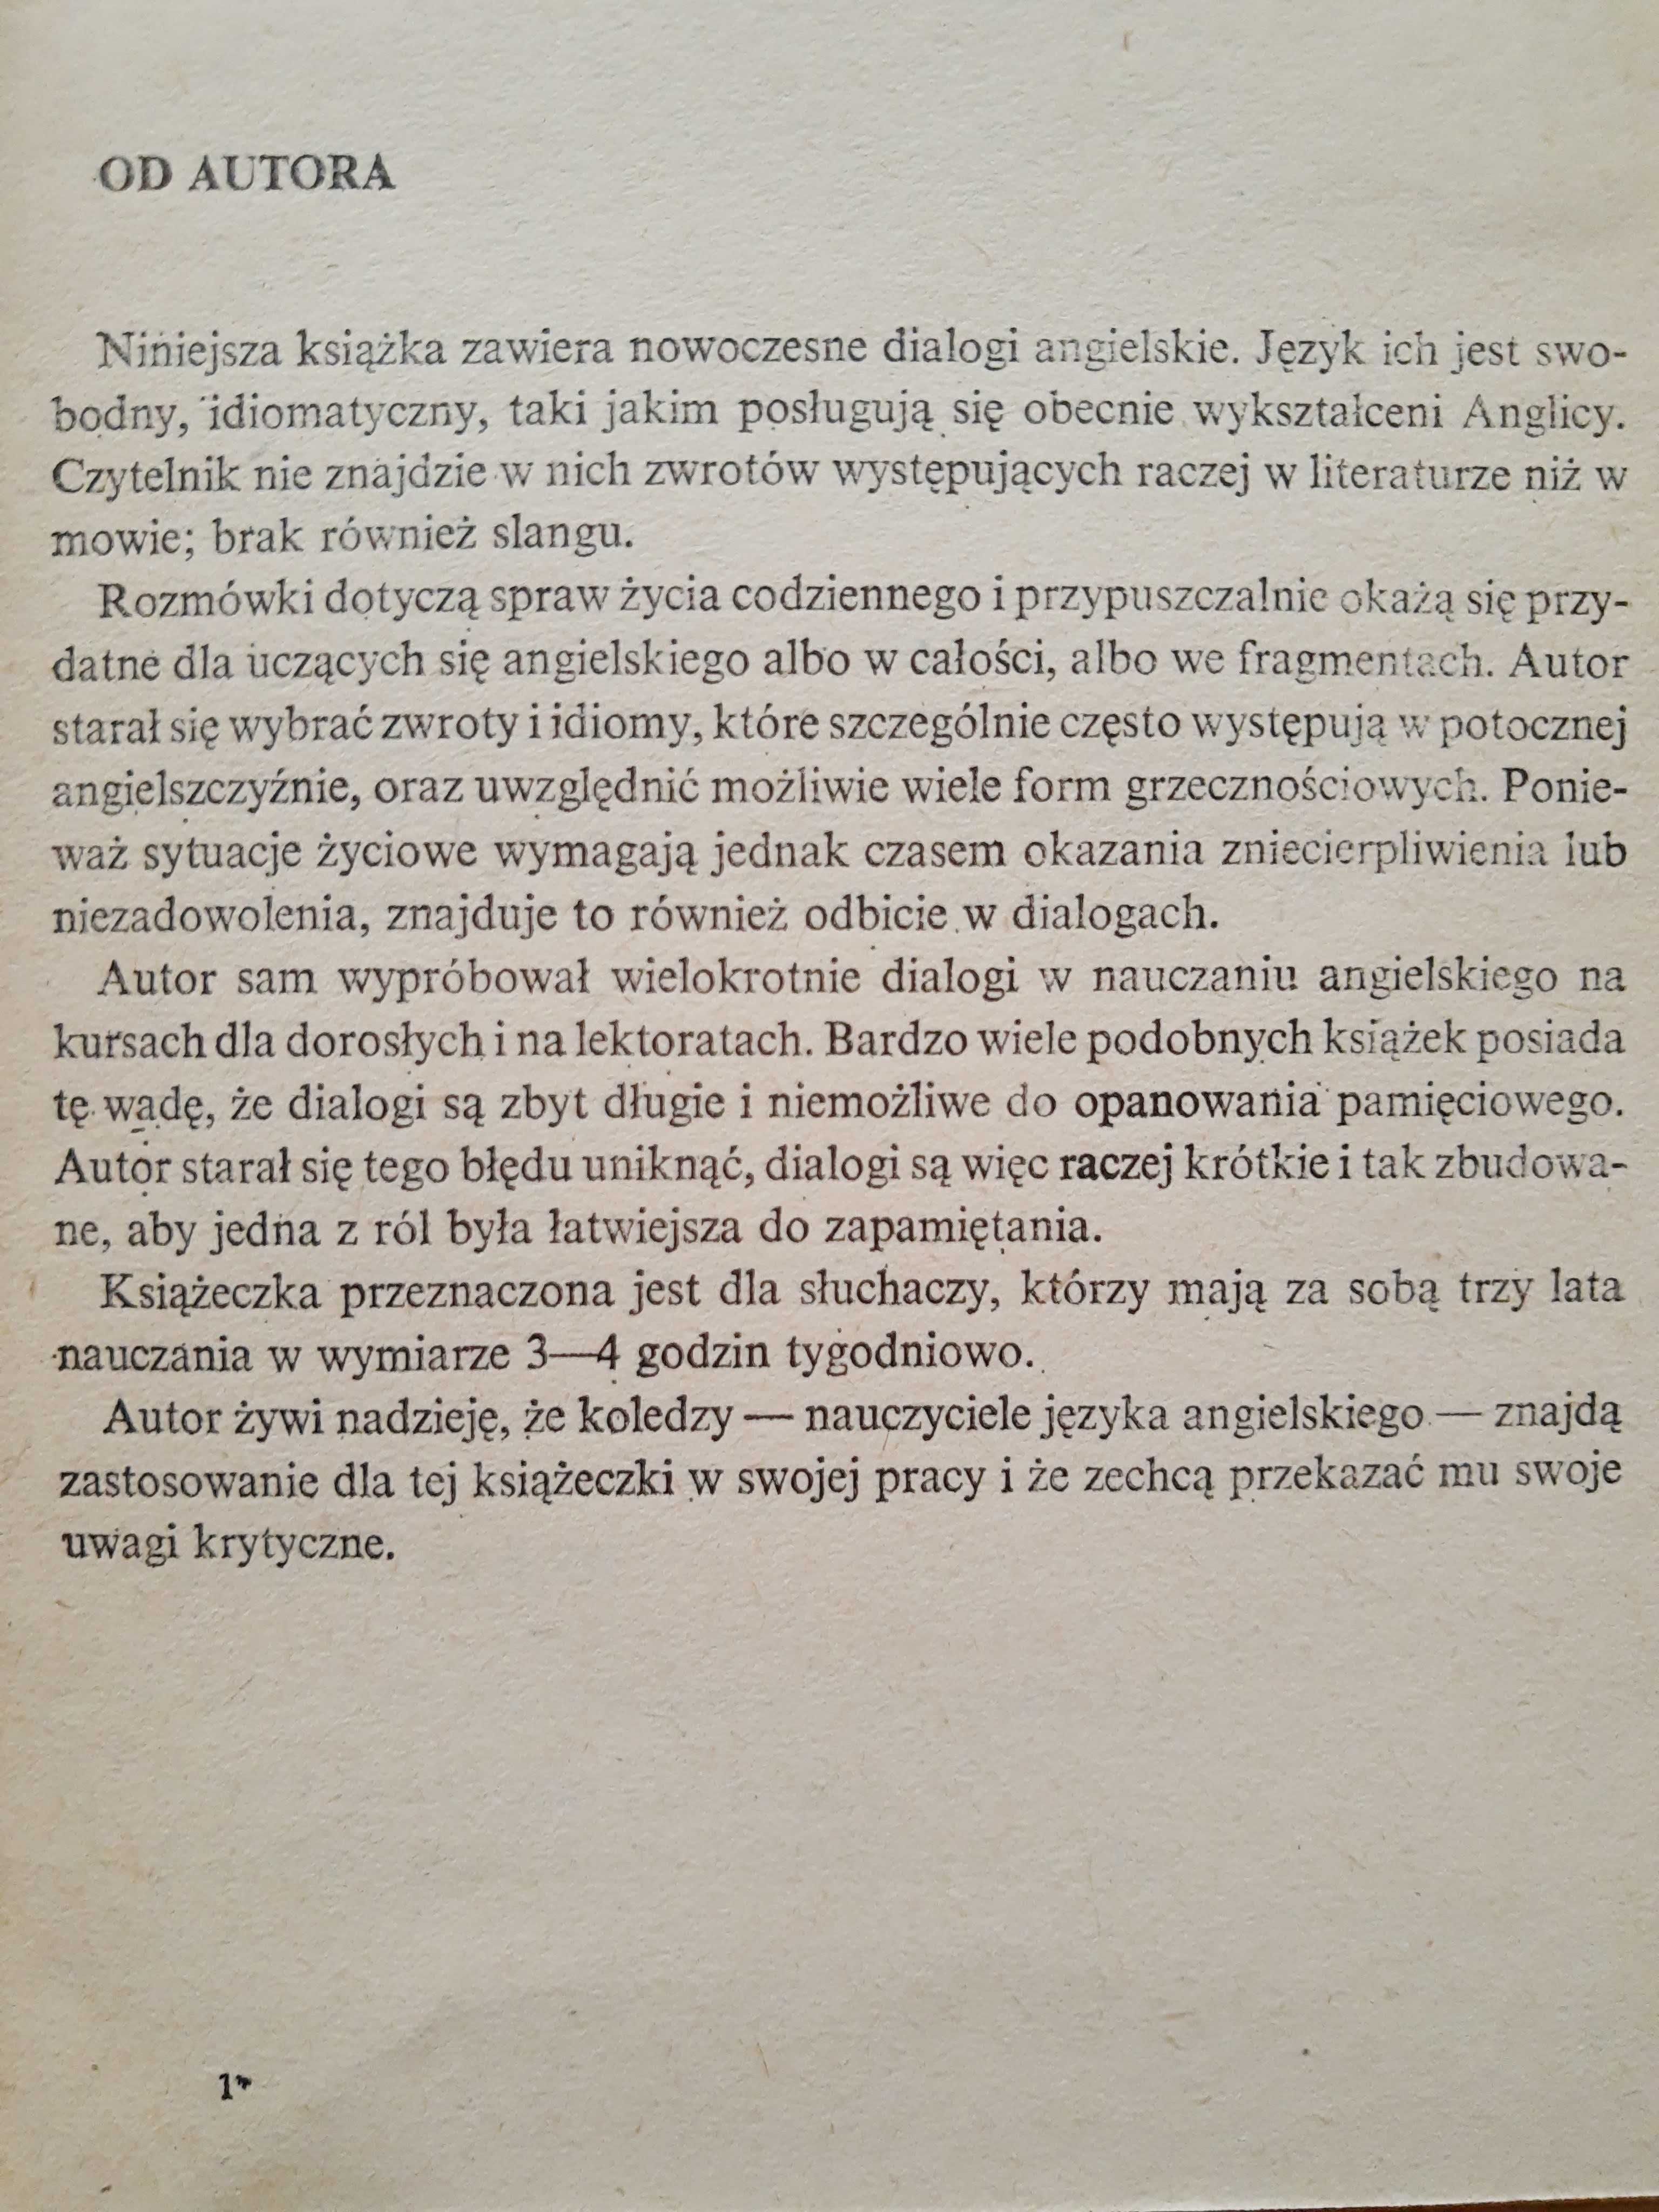 The English Way. Mieczysław Kobylański